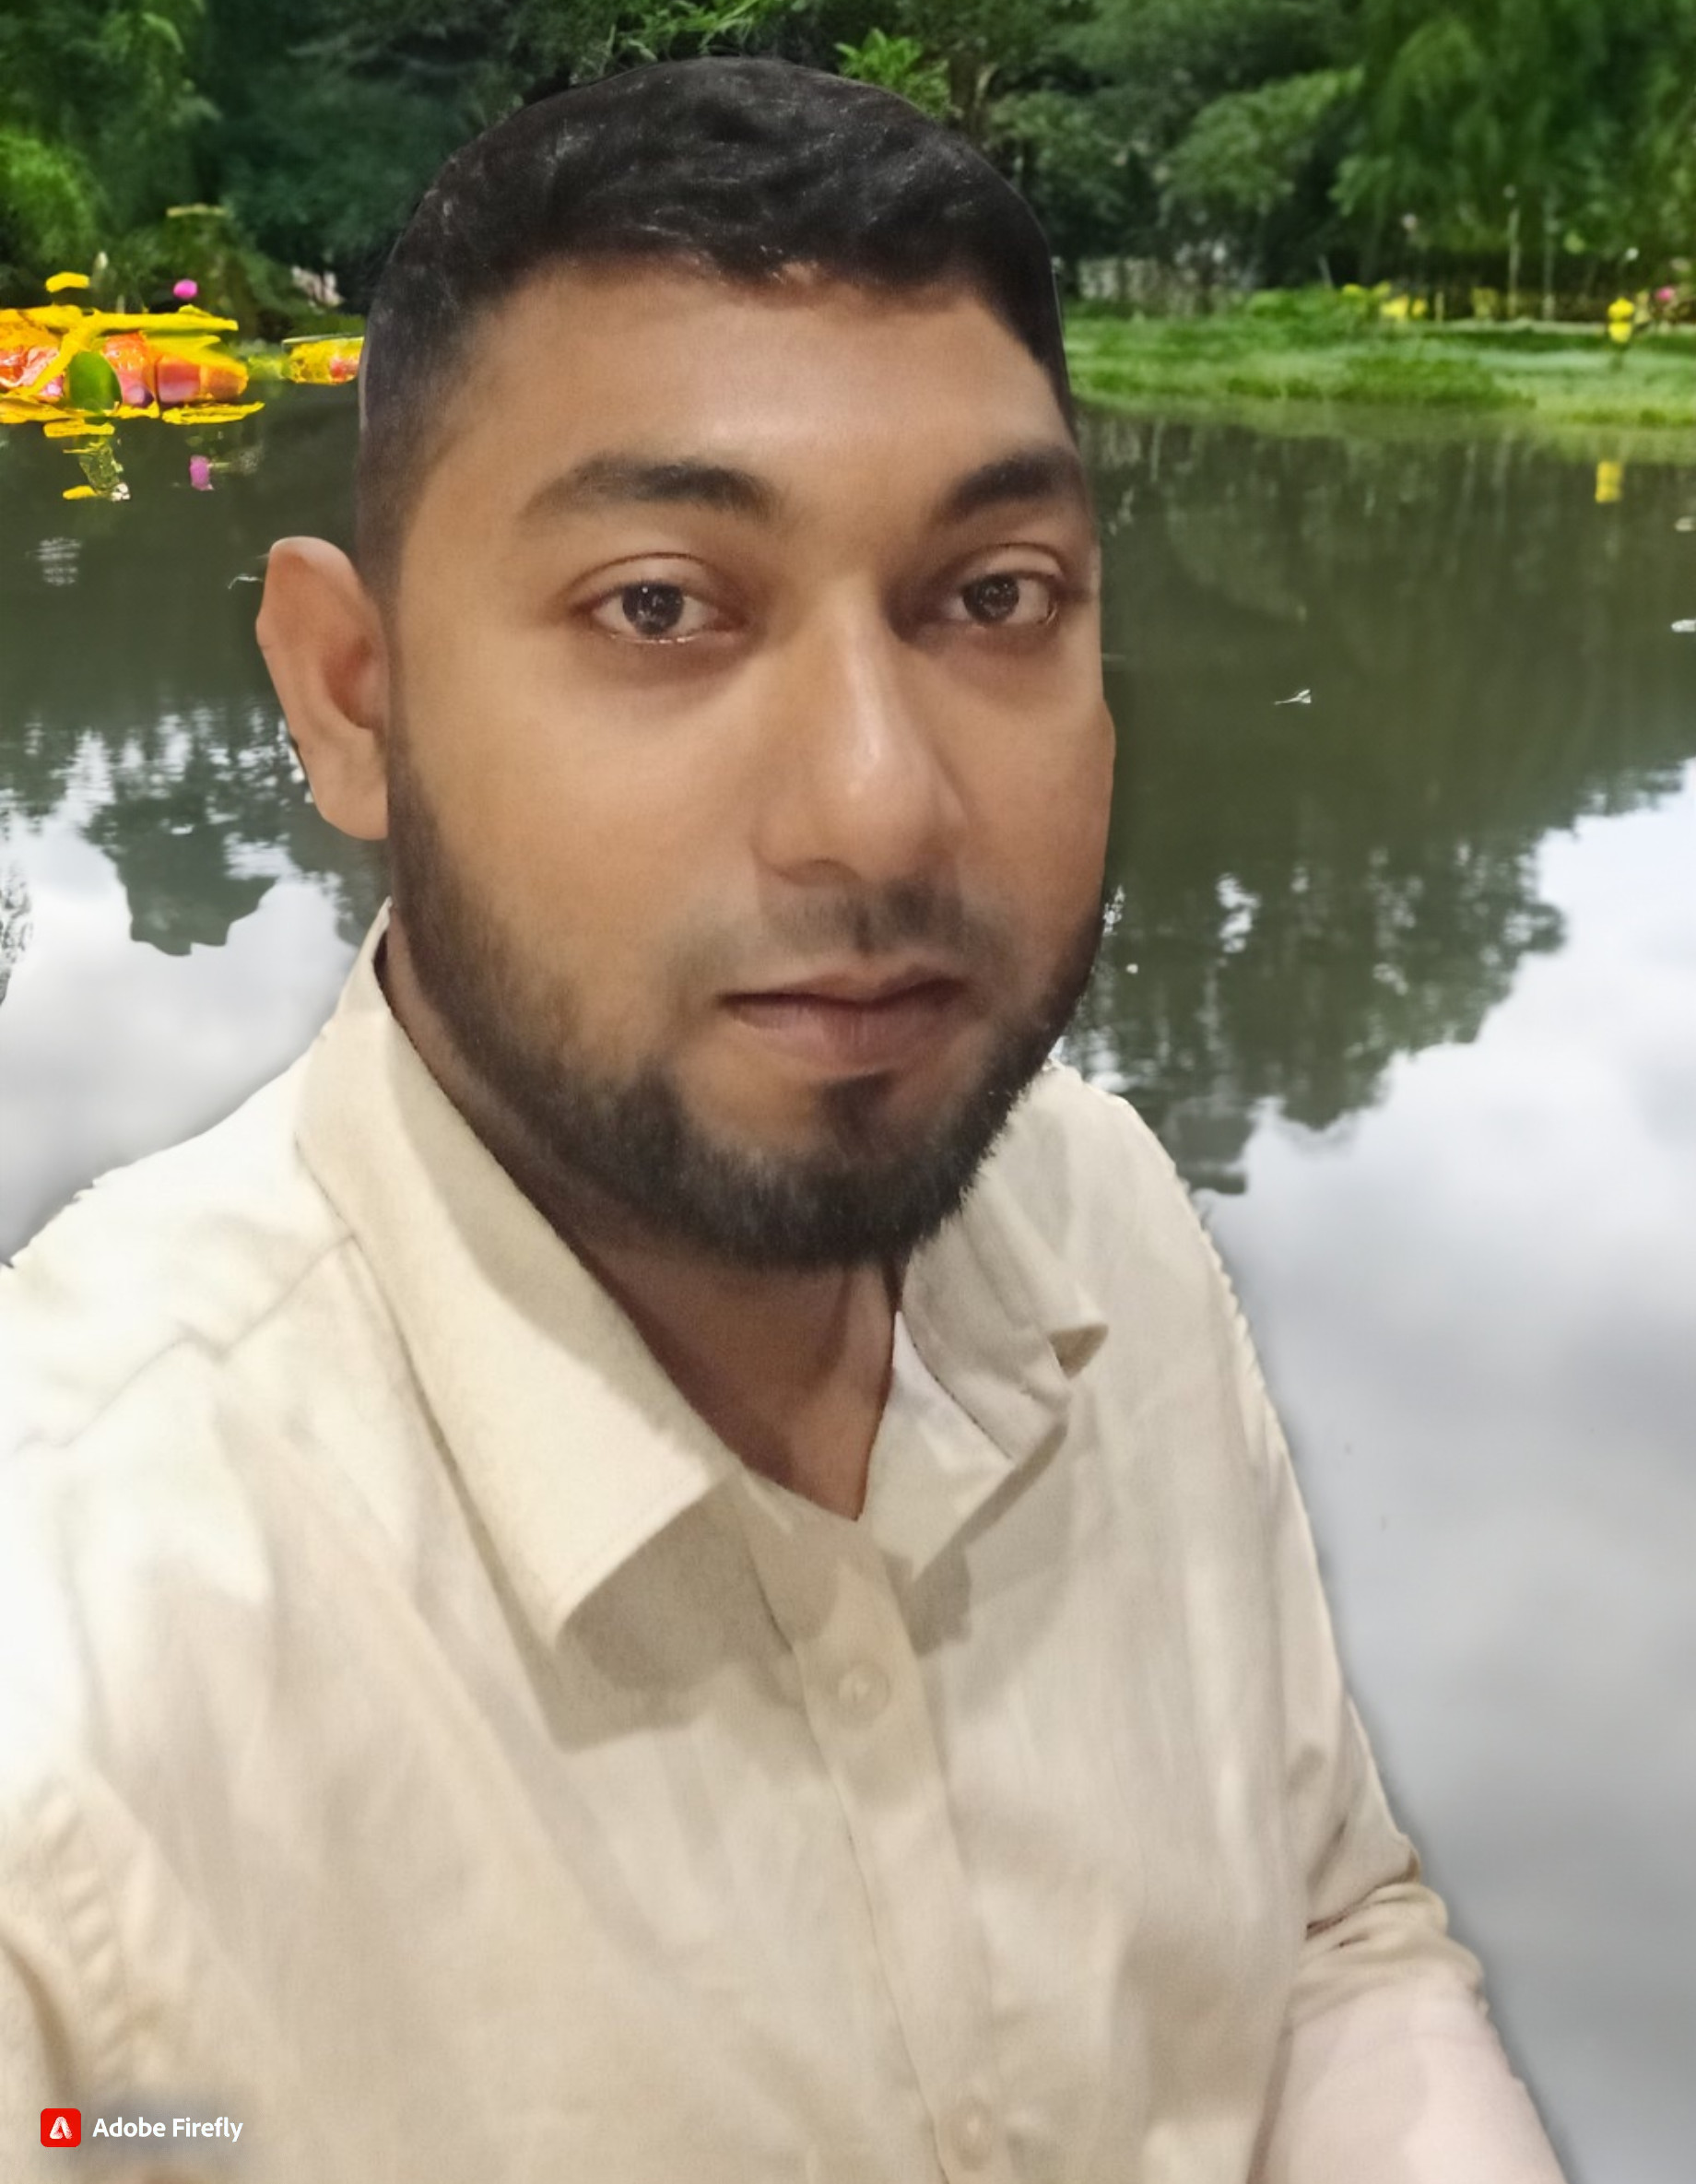 Md. Merajul Islam Profile Picture